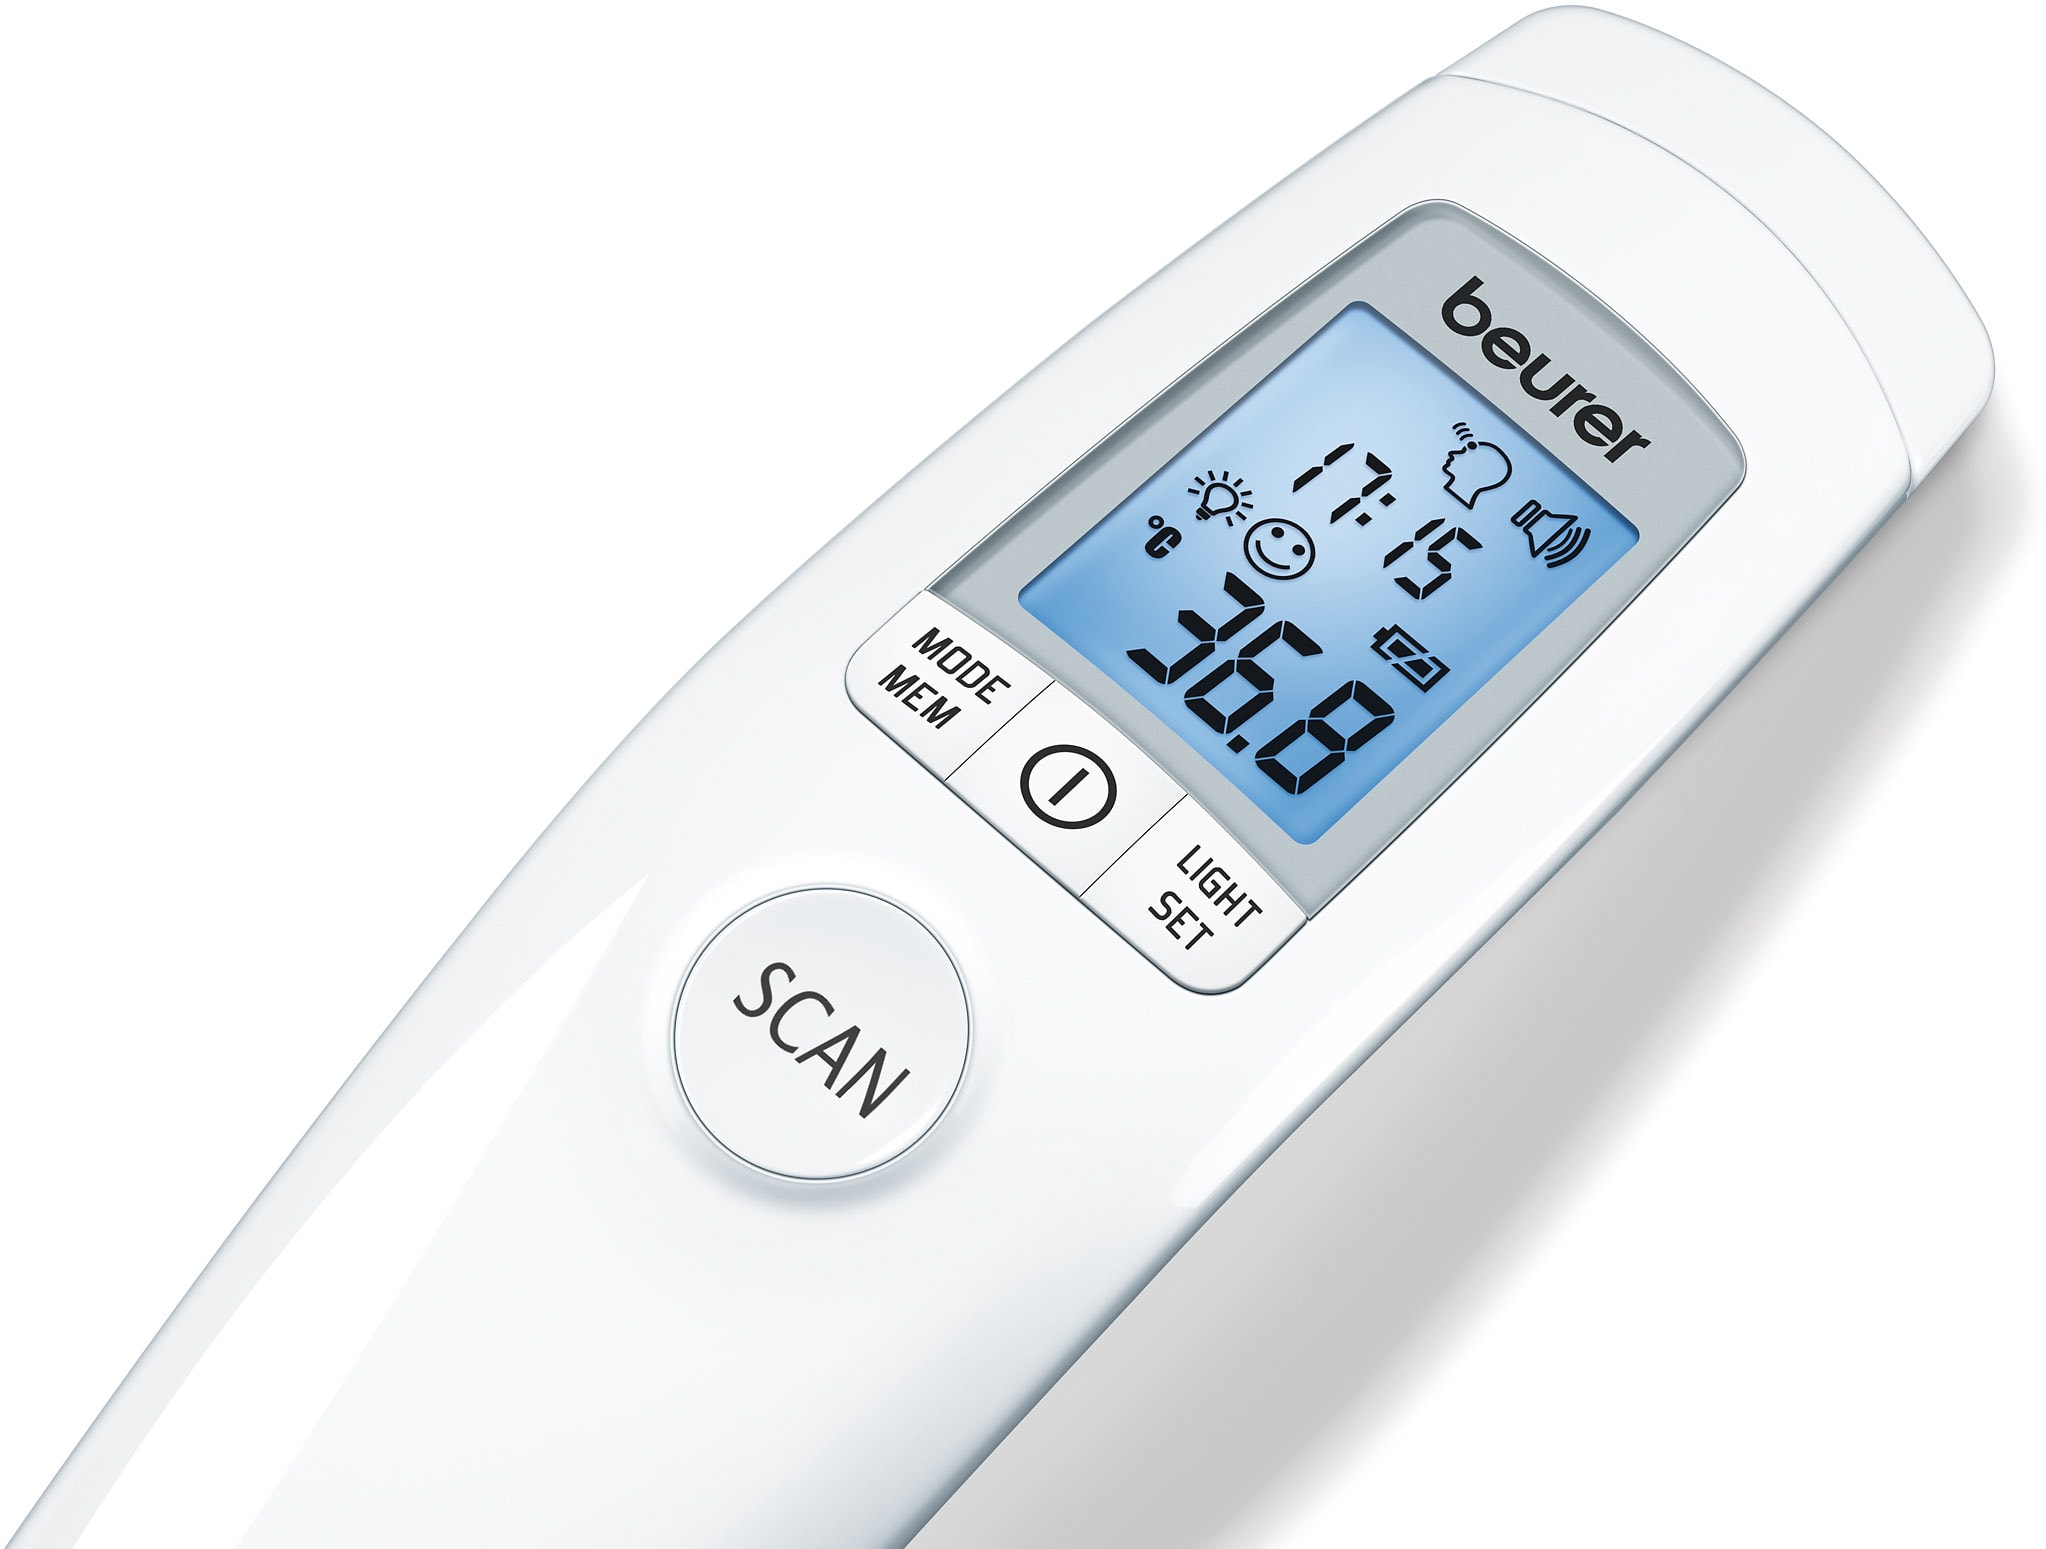 Beurer FT 09 Thermomètre médical numérique, bleu…